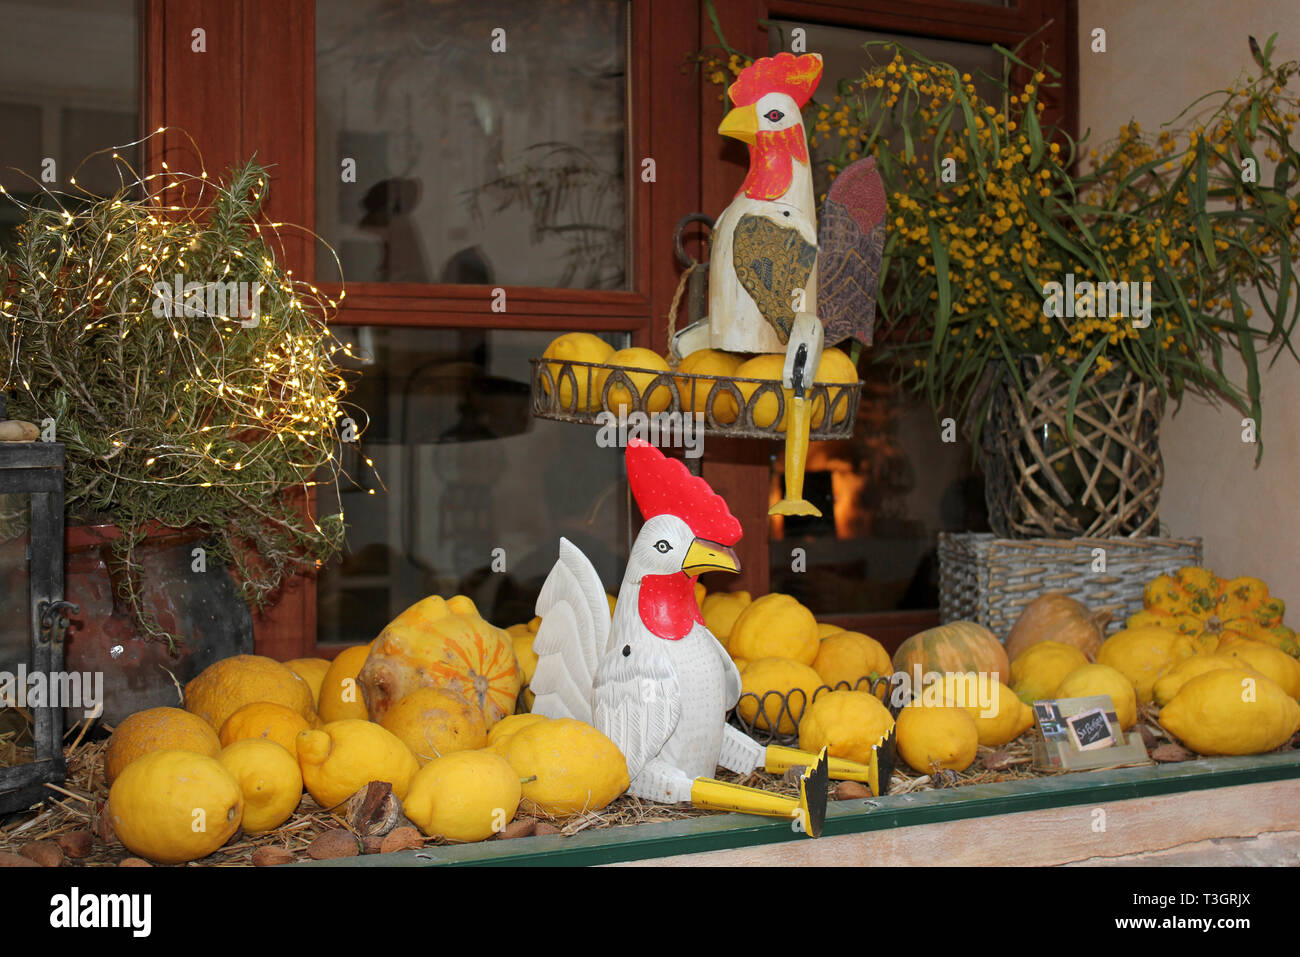 Poulets et décoratif des citrons dans la fenêtre de Sa Botiga Restaurant, Santanyi, Majorque Banque D'Images